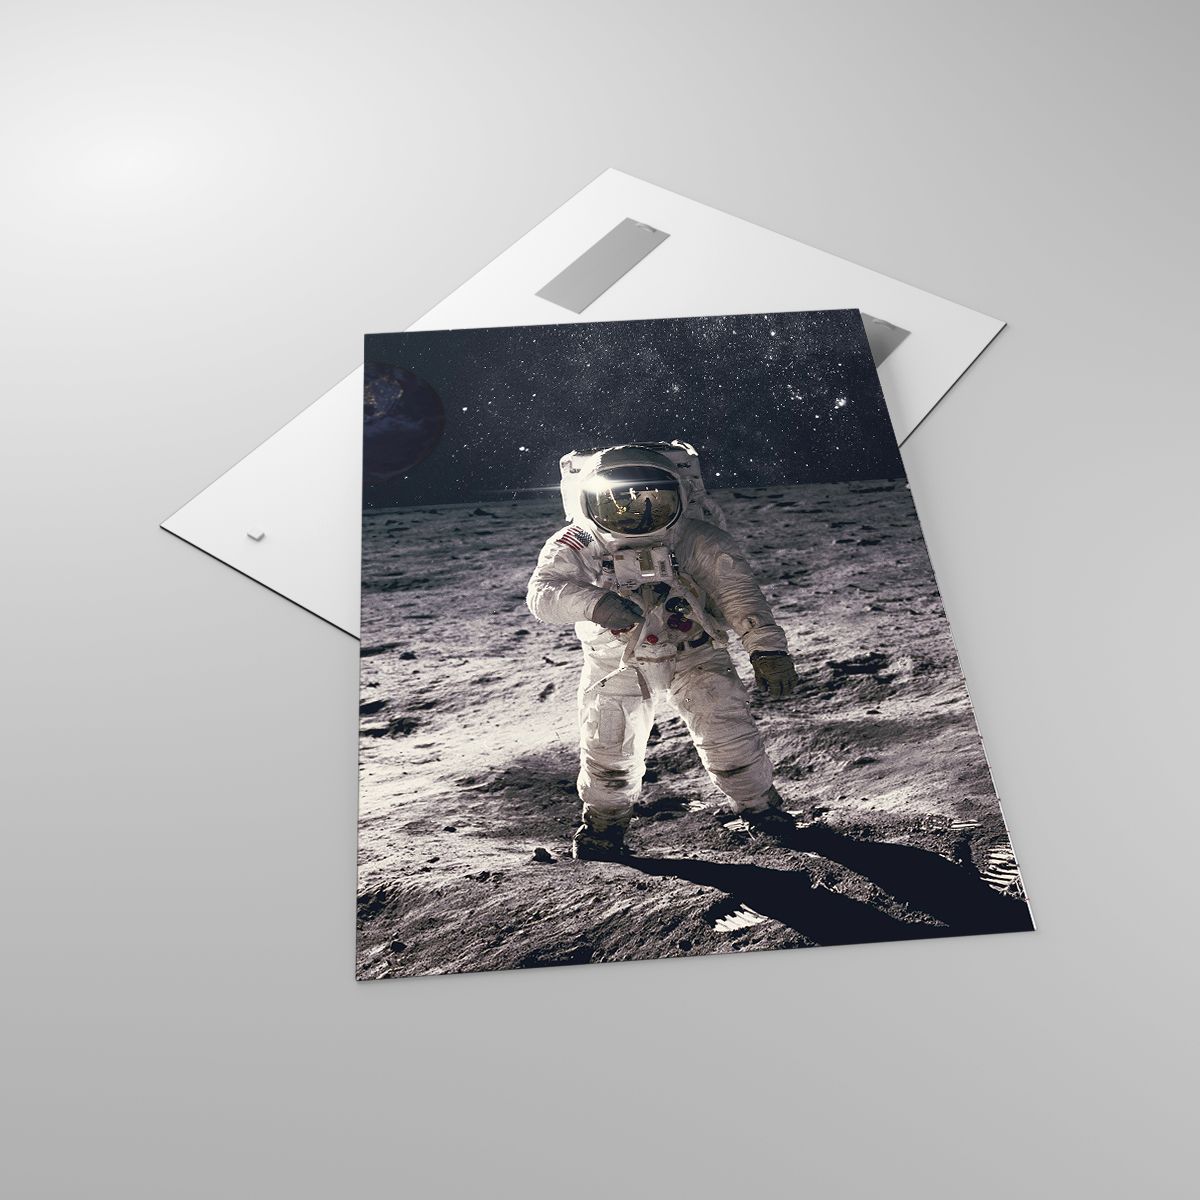 Glasbild Abstraktion, Glasbild Mann Im Mond, Glasbild Astronaut, Glasbild Kosmos, Glasbild Mond